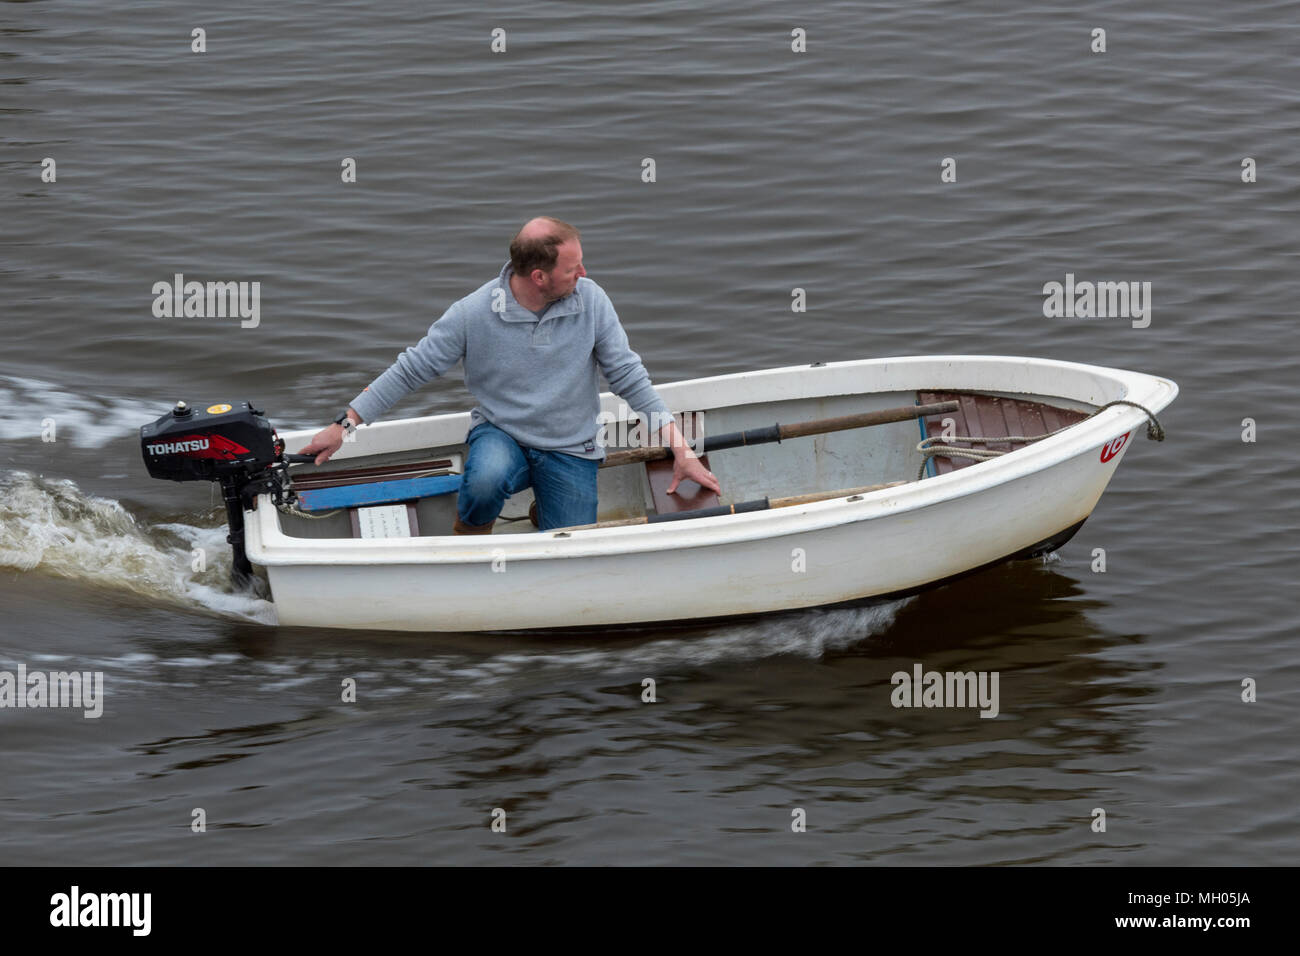 Ein Mann mit einem kleinen Ruderboot oder Ausschreibung zu einer Yacht mit einem Außenbordmotor verwendet werden, um das Handwerk zu lenken. Ein Mann mittleren Alters in einem kleinen Boot Helming. Stockfoto